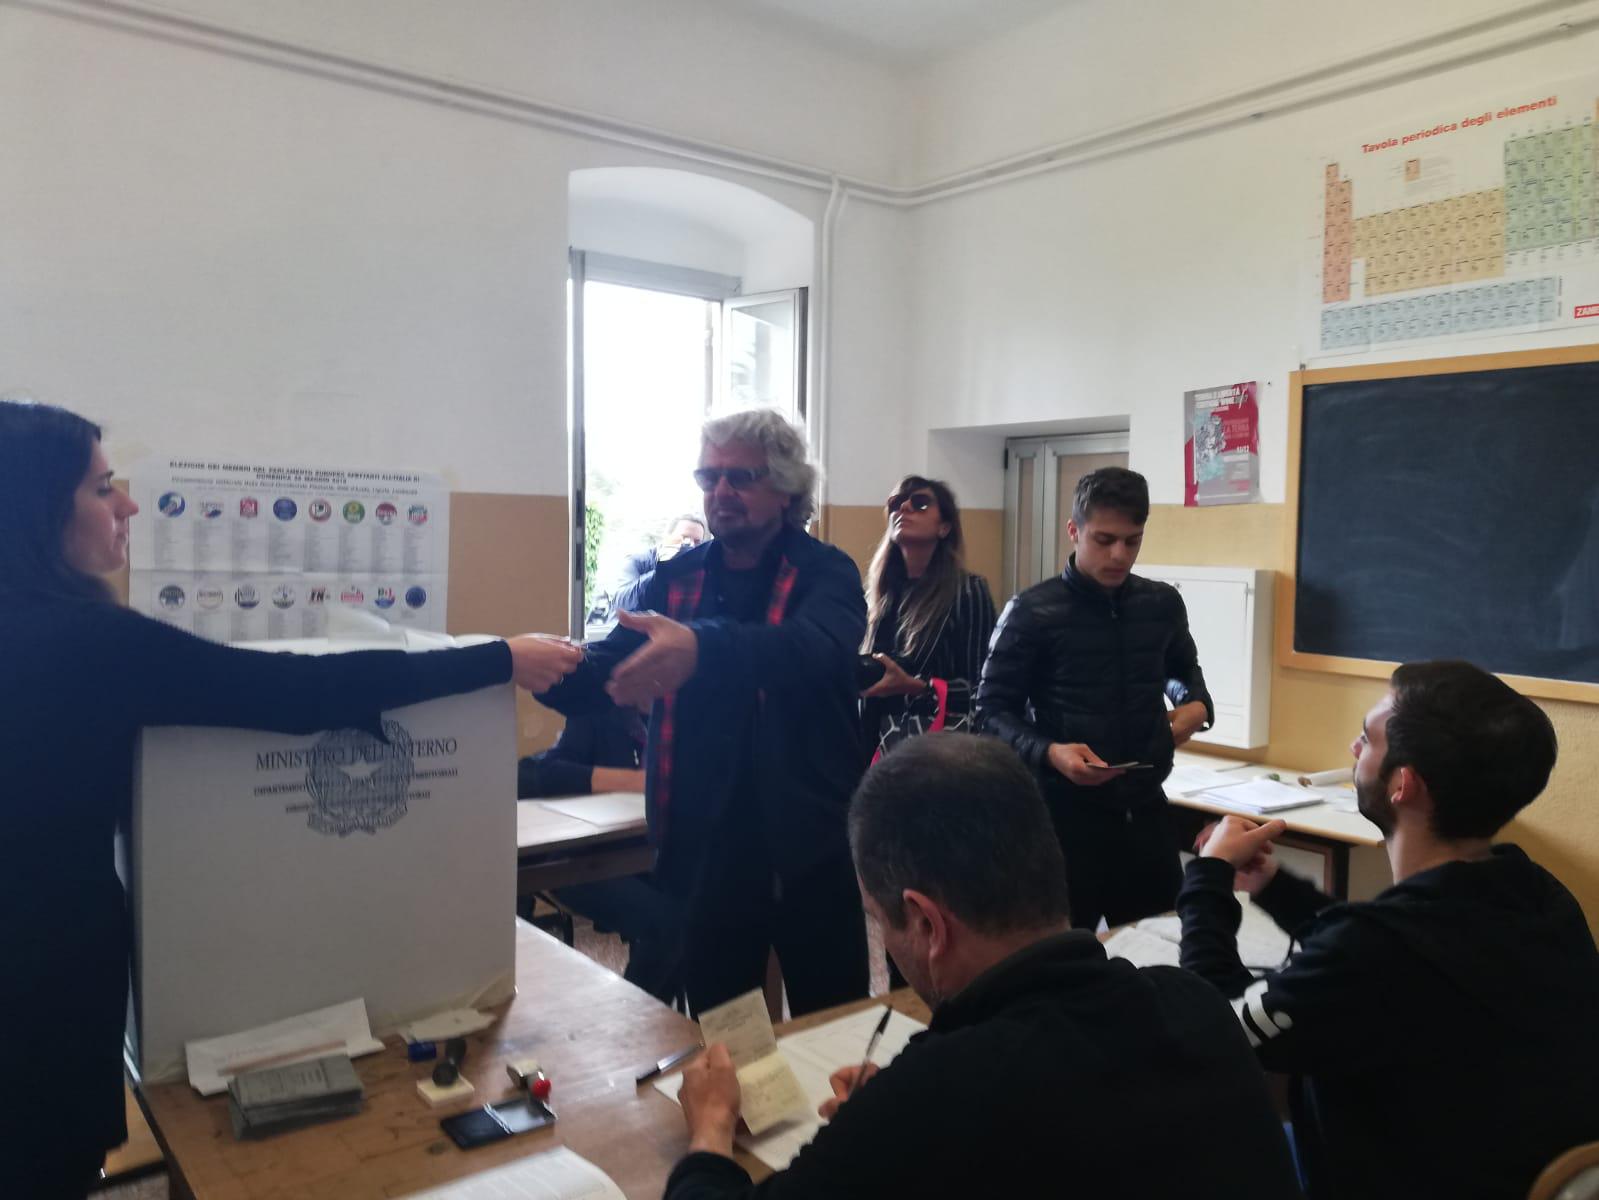 Beppe Grillo al seggio